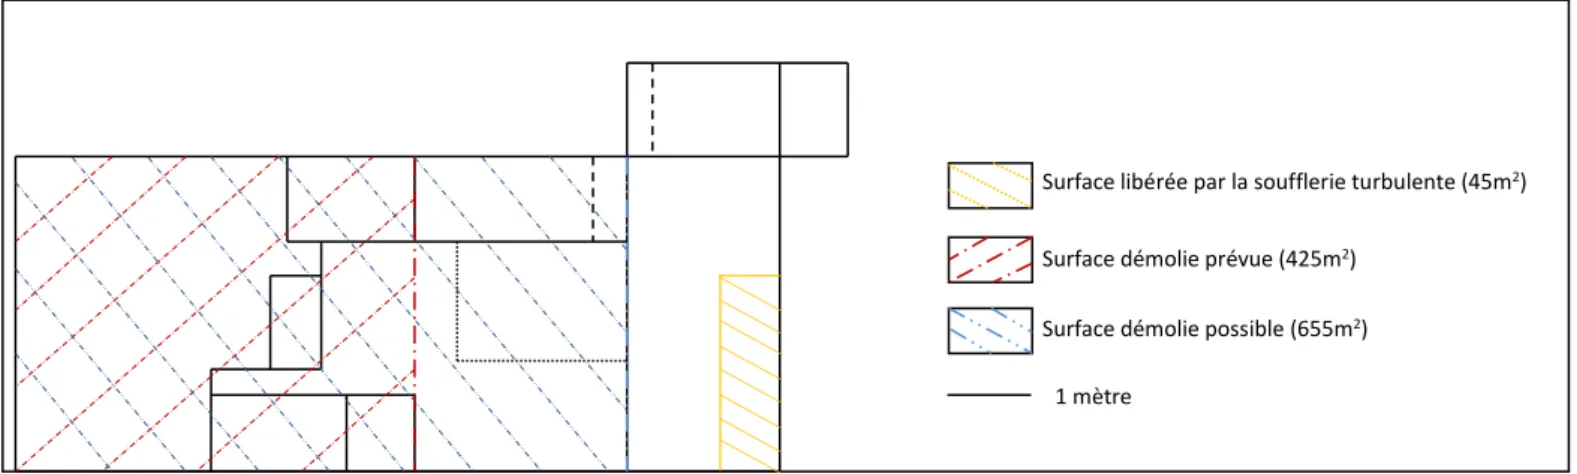 Figure 8 : Plan des halls expérimentaux, rez-de-chaussée.  